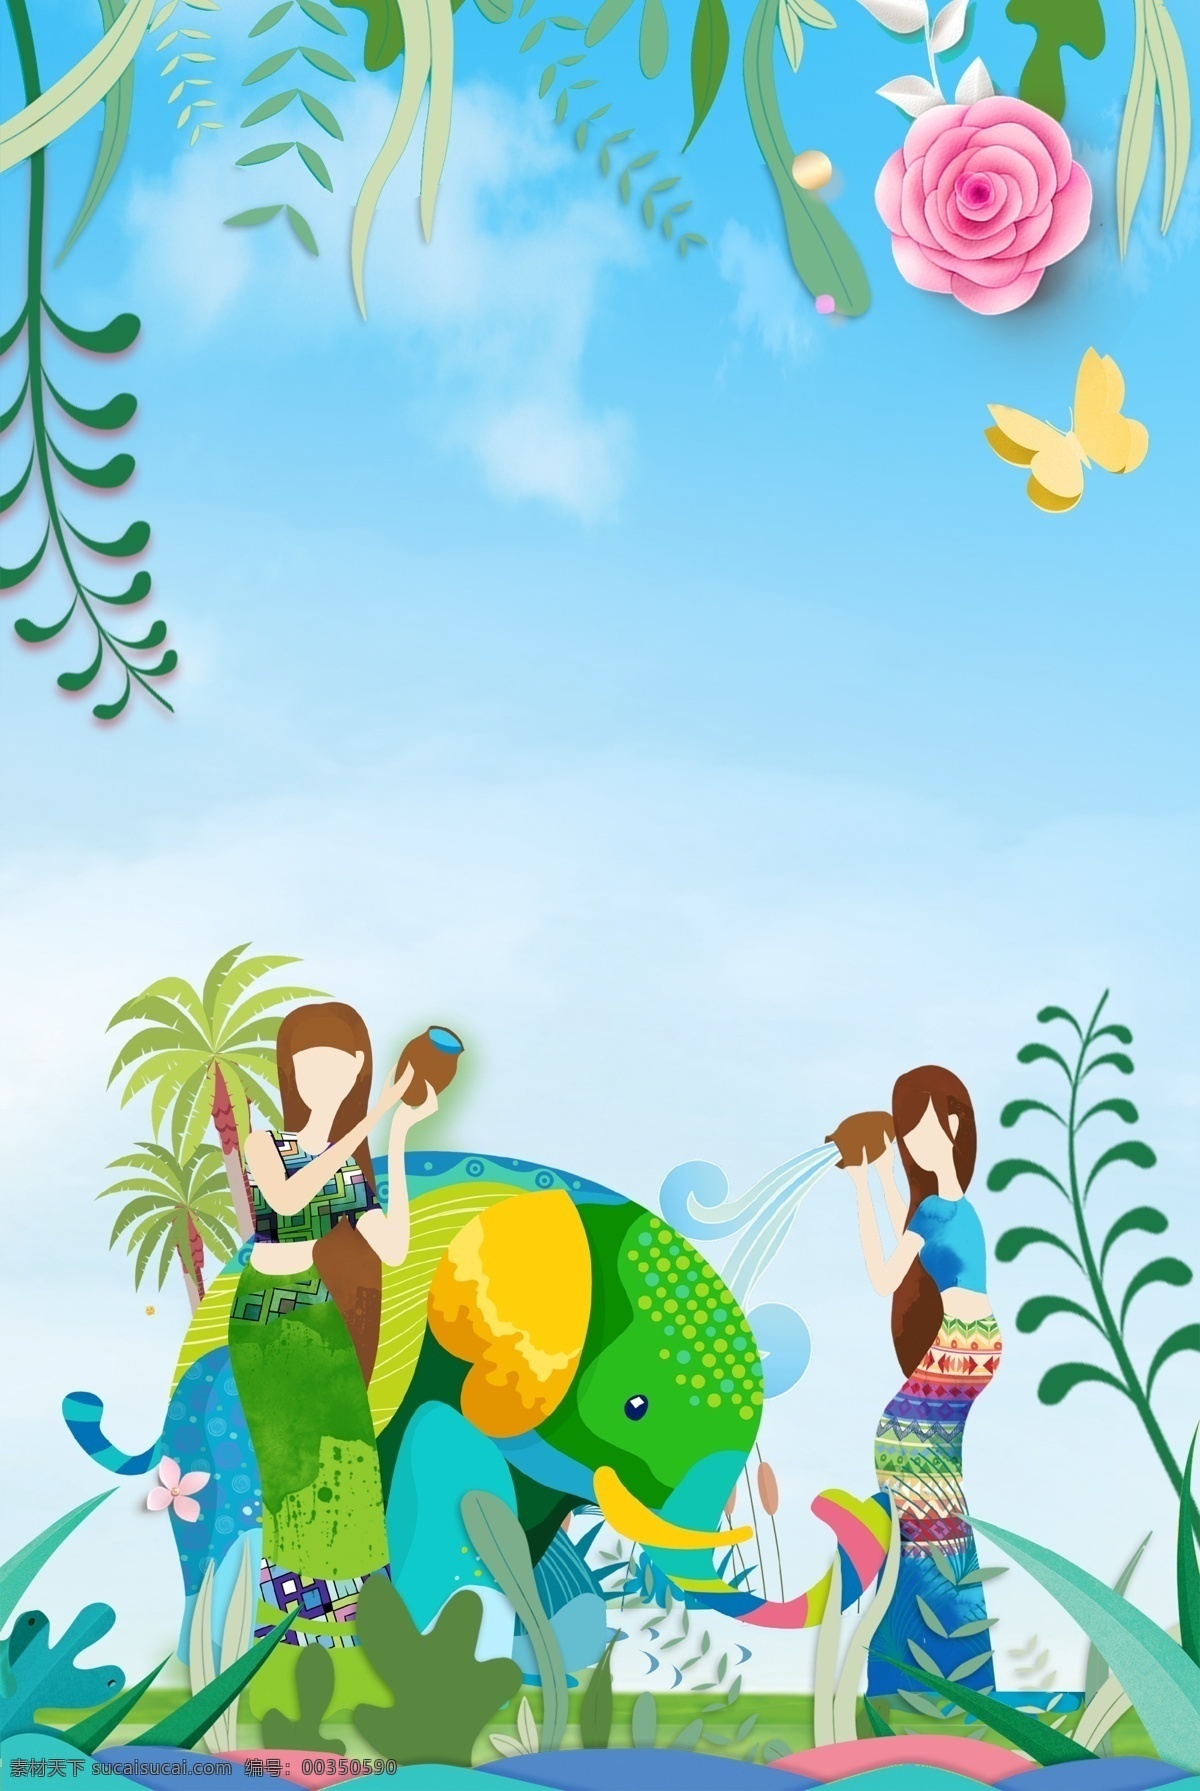 傣族 泼水节 海报 背景 云南 大象 美女 植物 蓝天白云 绿色 蓝色 鲜花 傣族新年 传统节日 少数民族 开心 狂欢